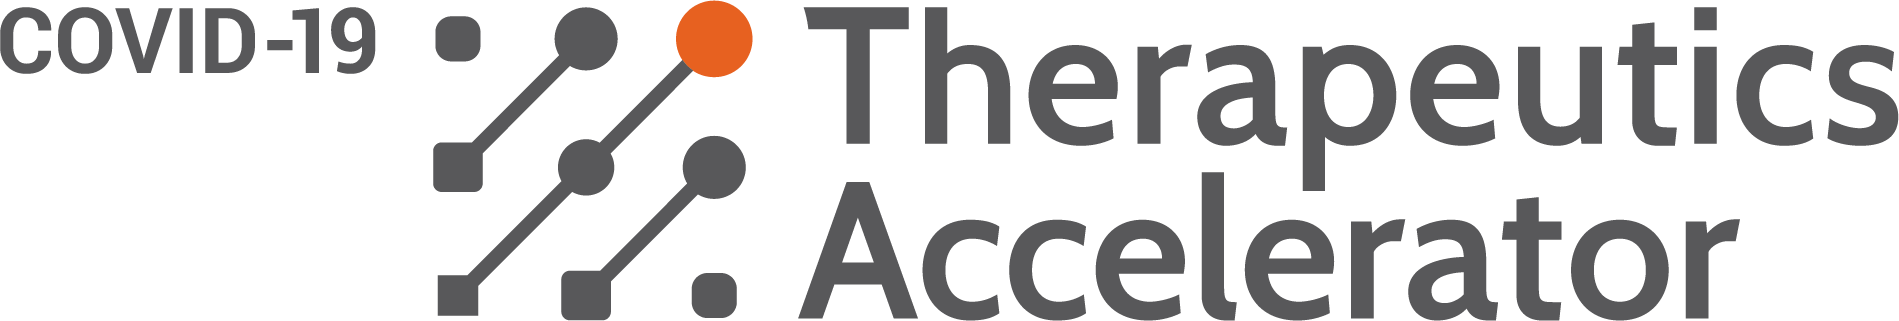 Logo for the COVID-19 Therapeutics Accelerator